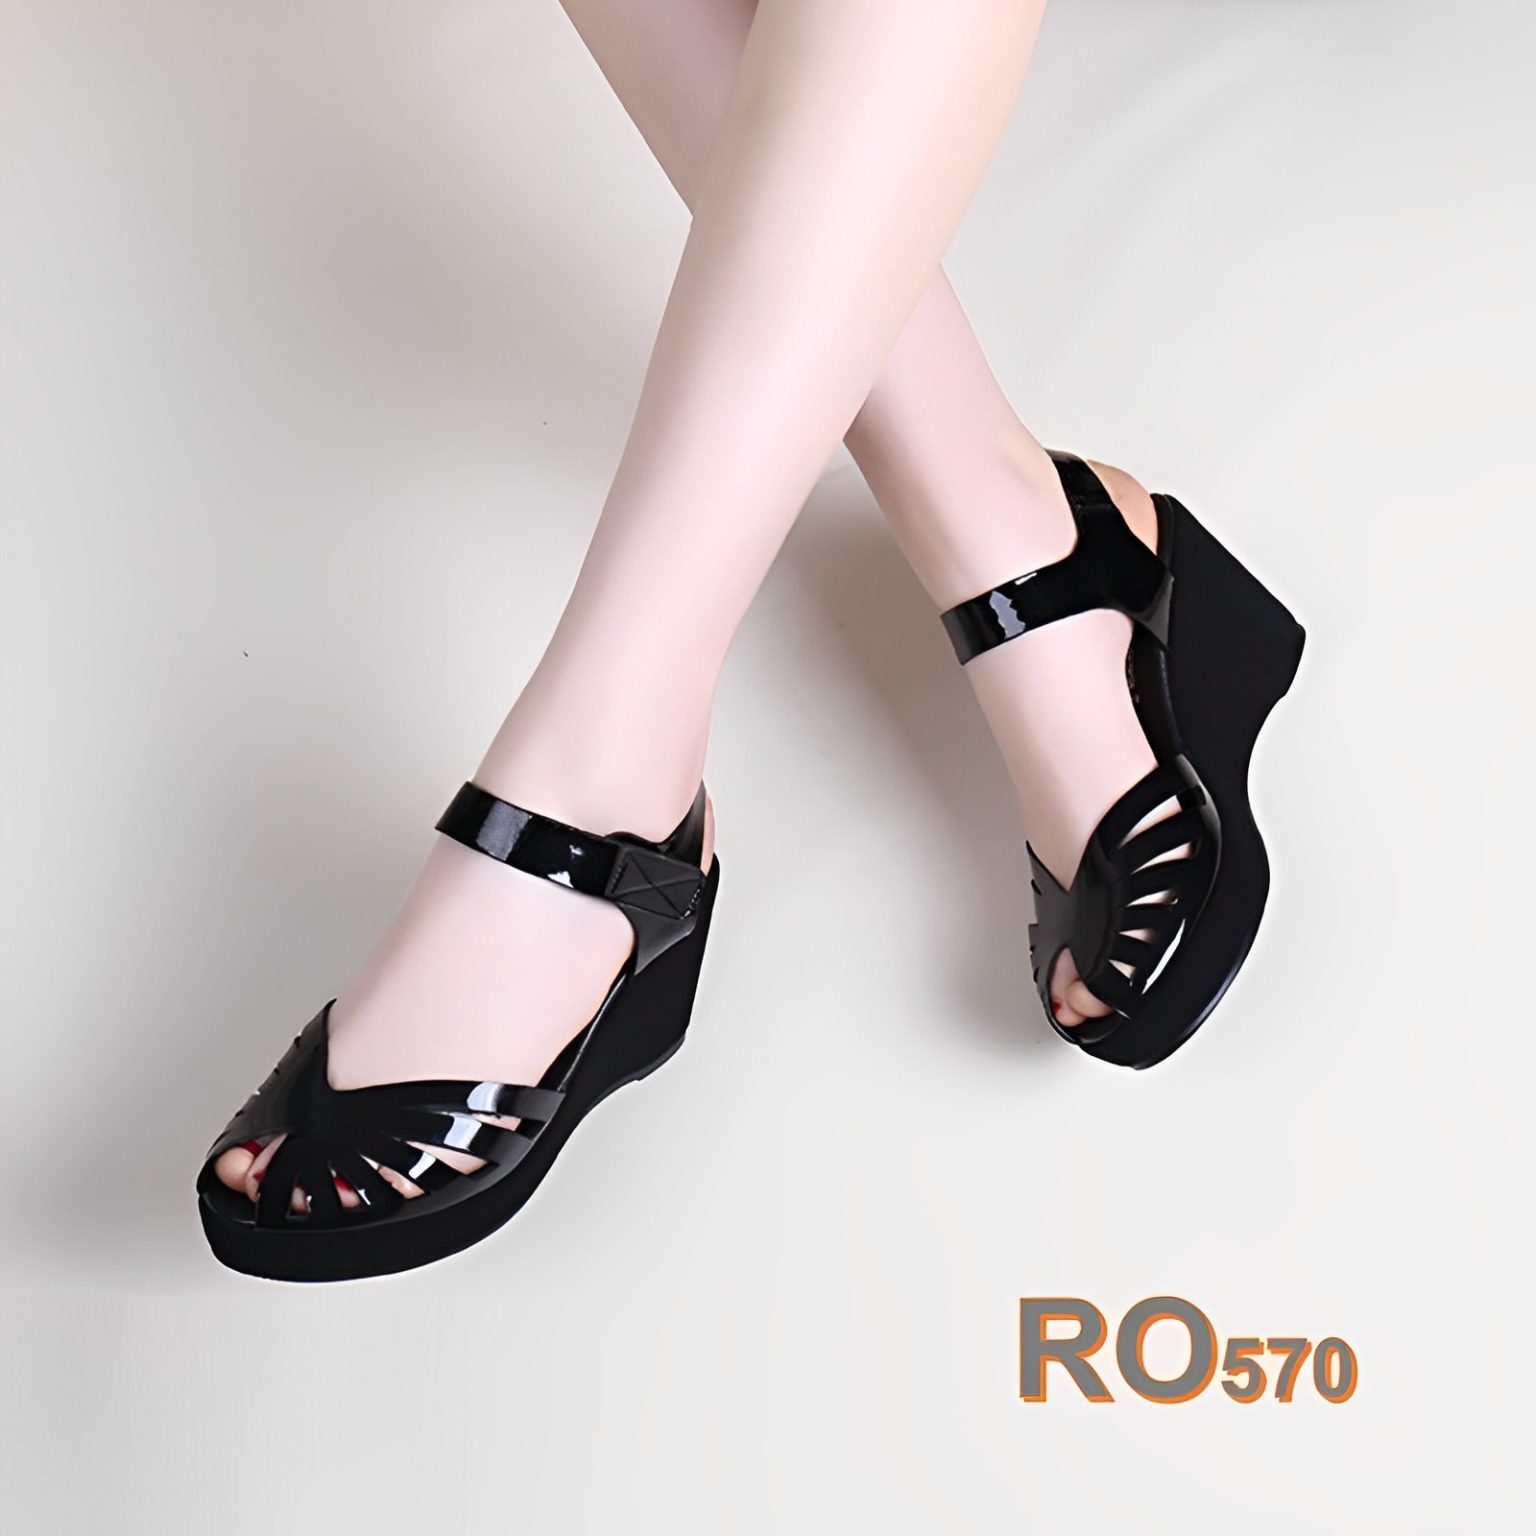 Giày sandal rọ, quai dán, đế xuồng ROSATA RO570 cao 6p - đen, chì - HÀNG VIỆT NAM - BKSTORE